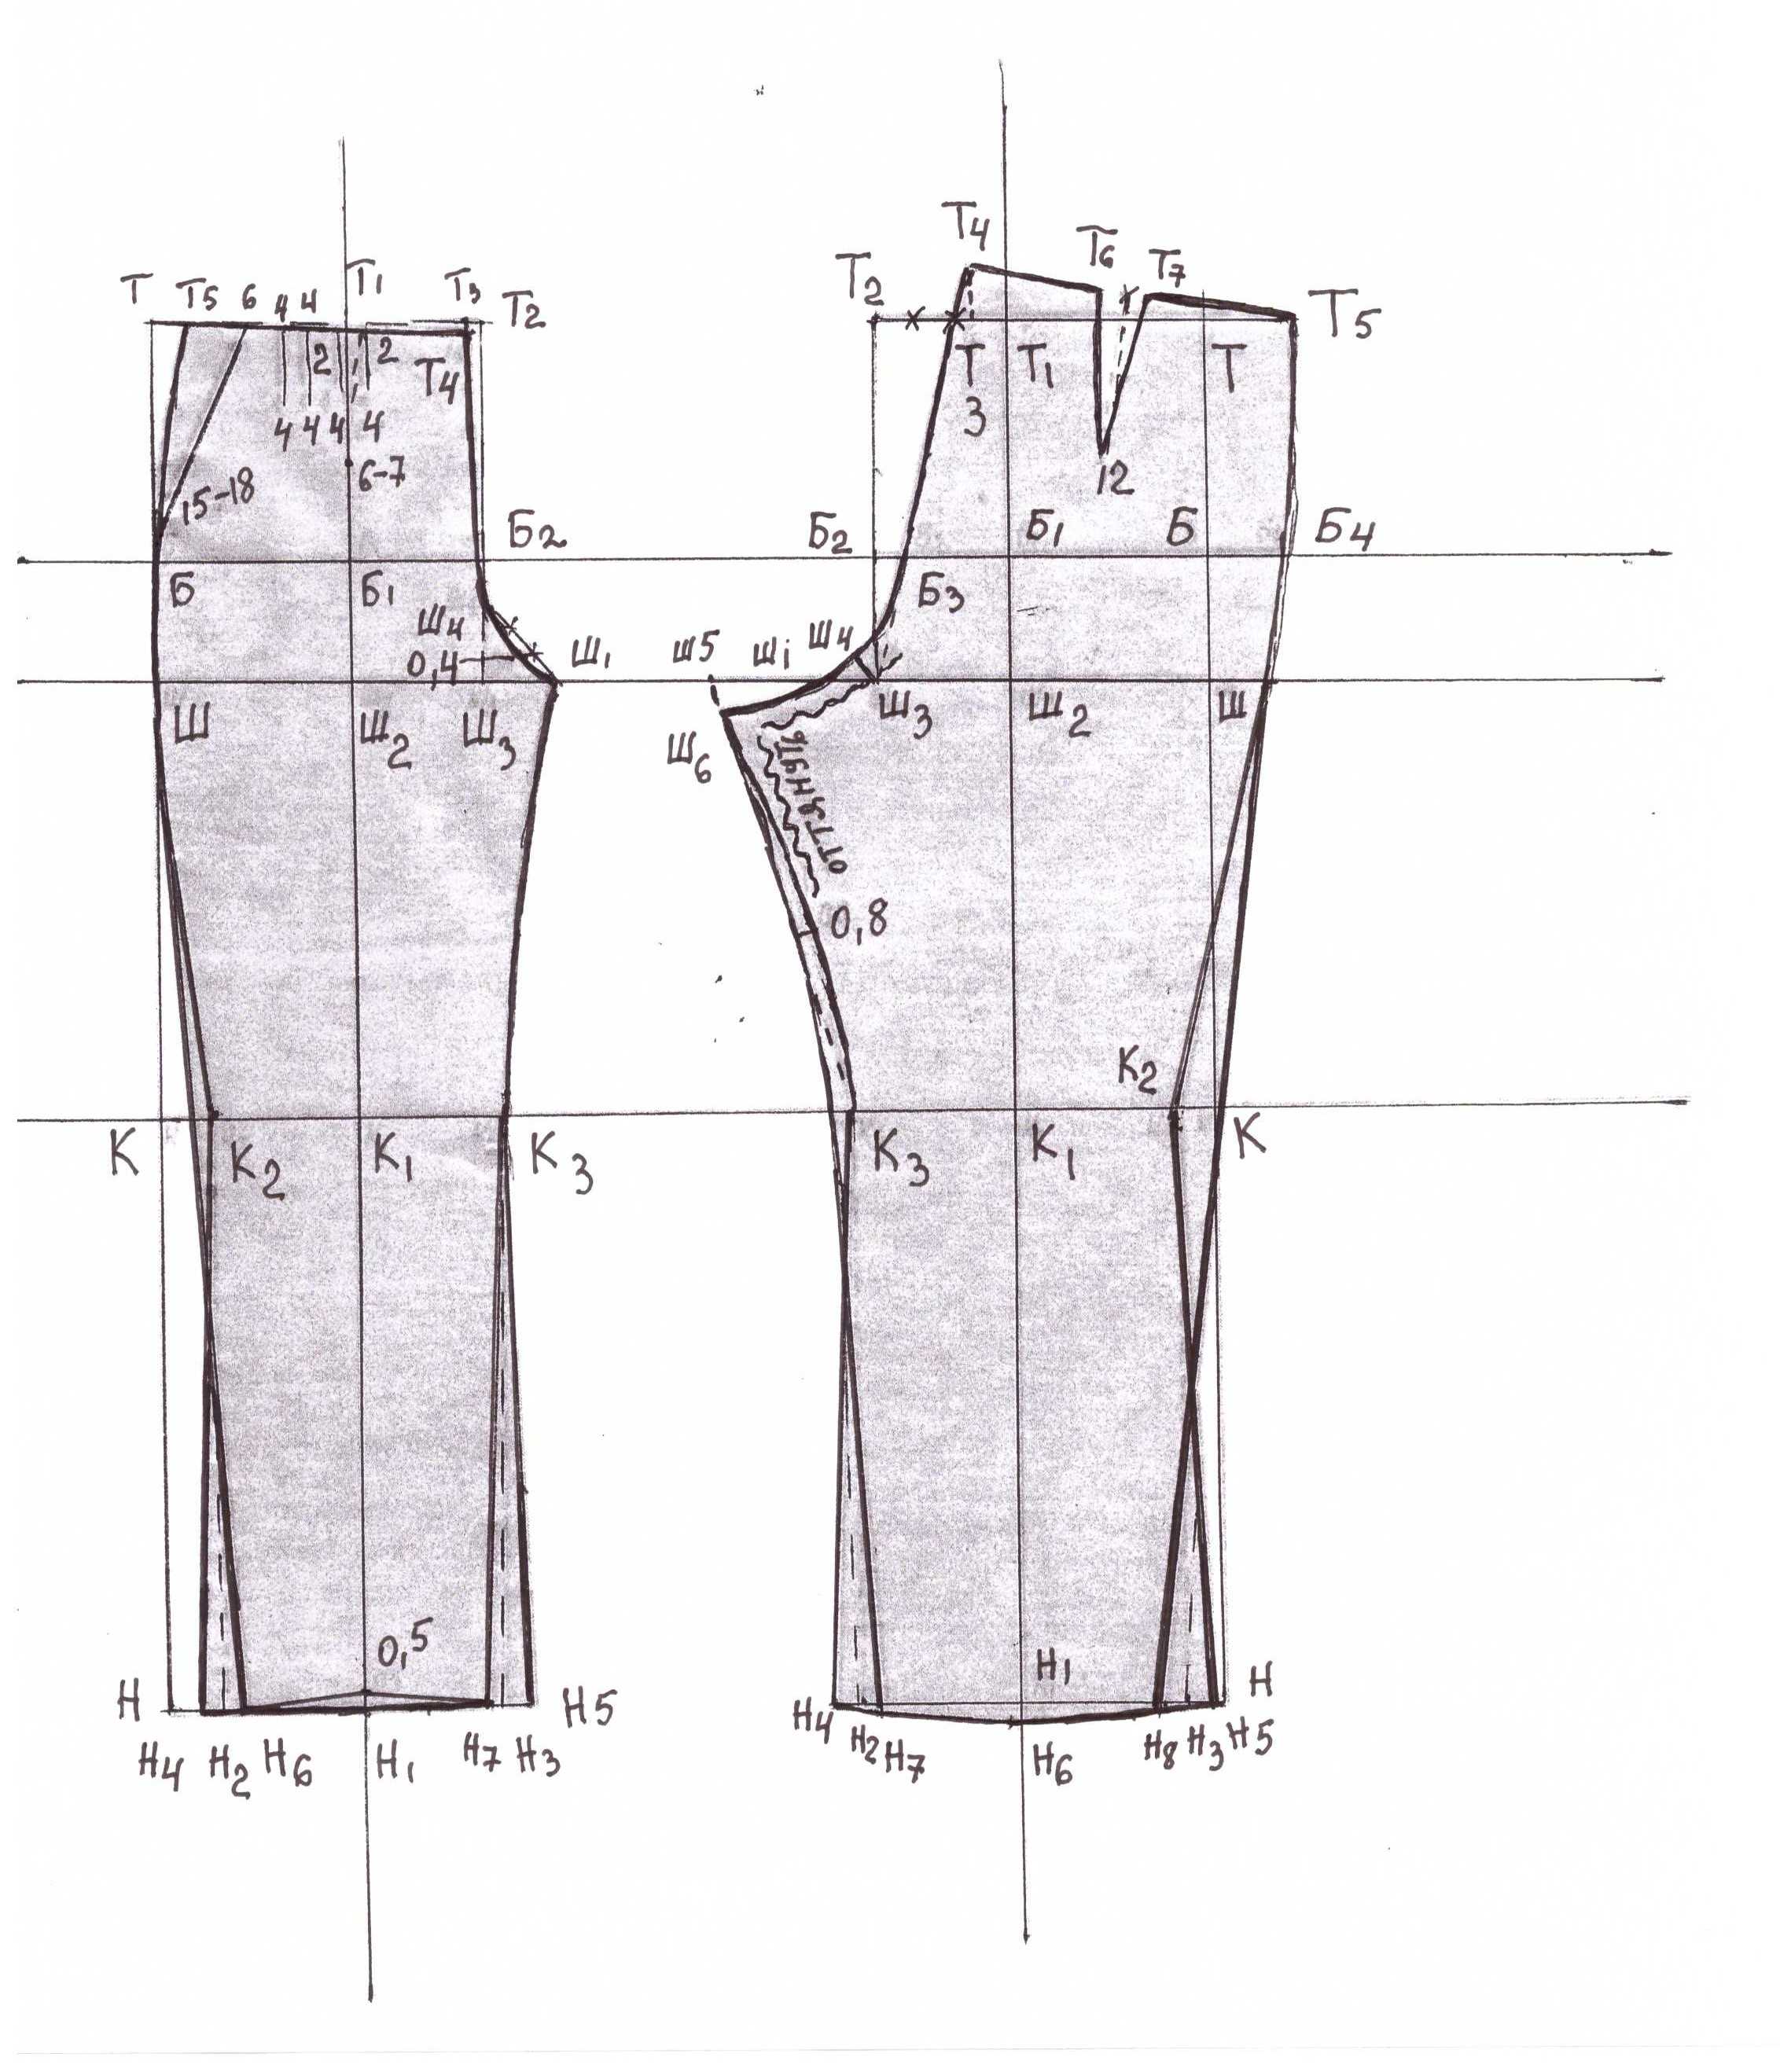 Выкройка брюк, построение , как сшить брюки своими руками - технология и инструкция пошагово, мастер-класс